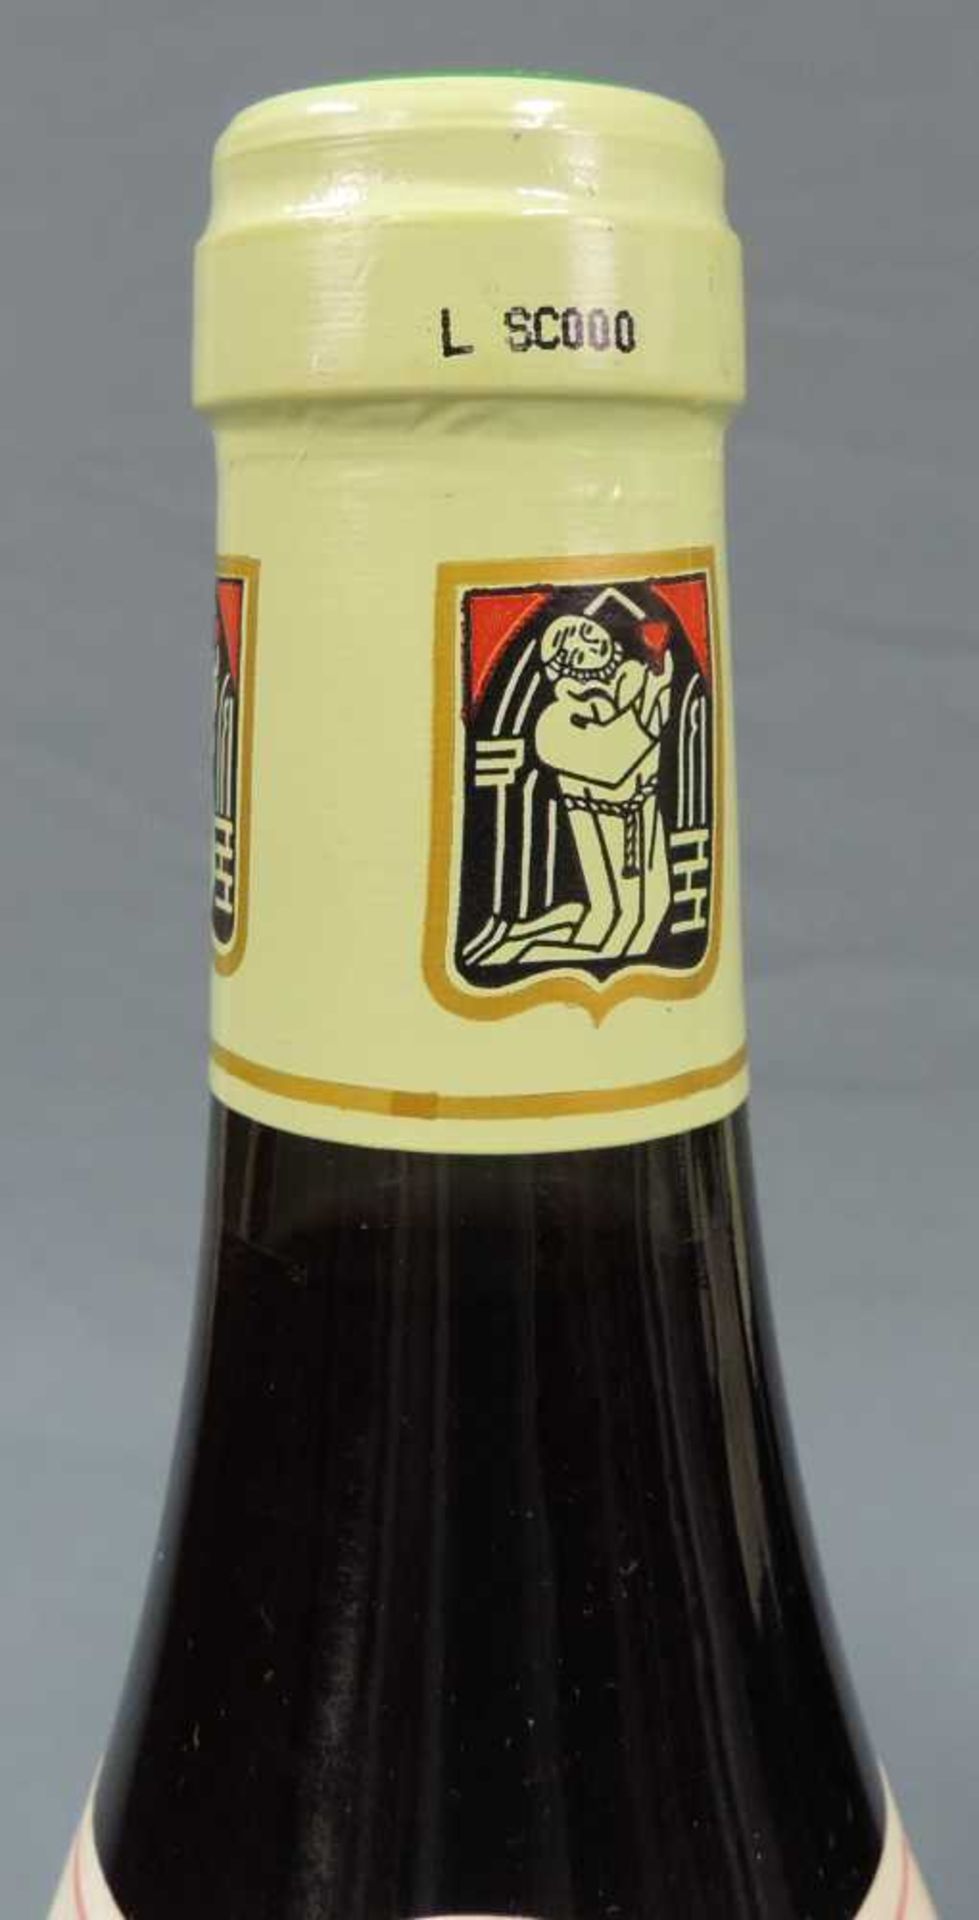 2000 Domaine Prieur - Brunet, Satenay Comme Premier Cru, France. 8 Flaschen, 750 ml, Alc., 13,5% - Image 5 of 6